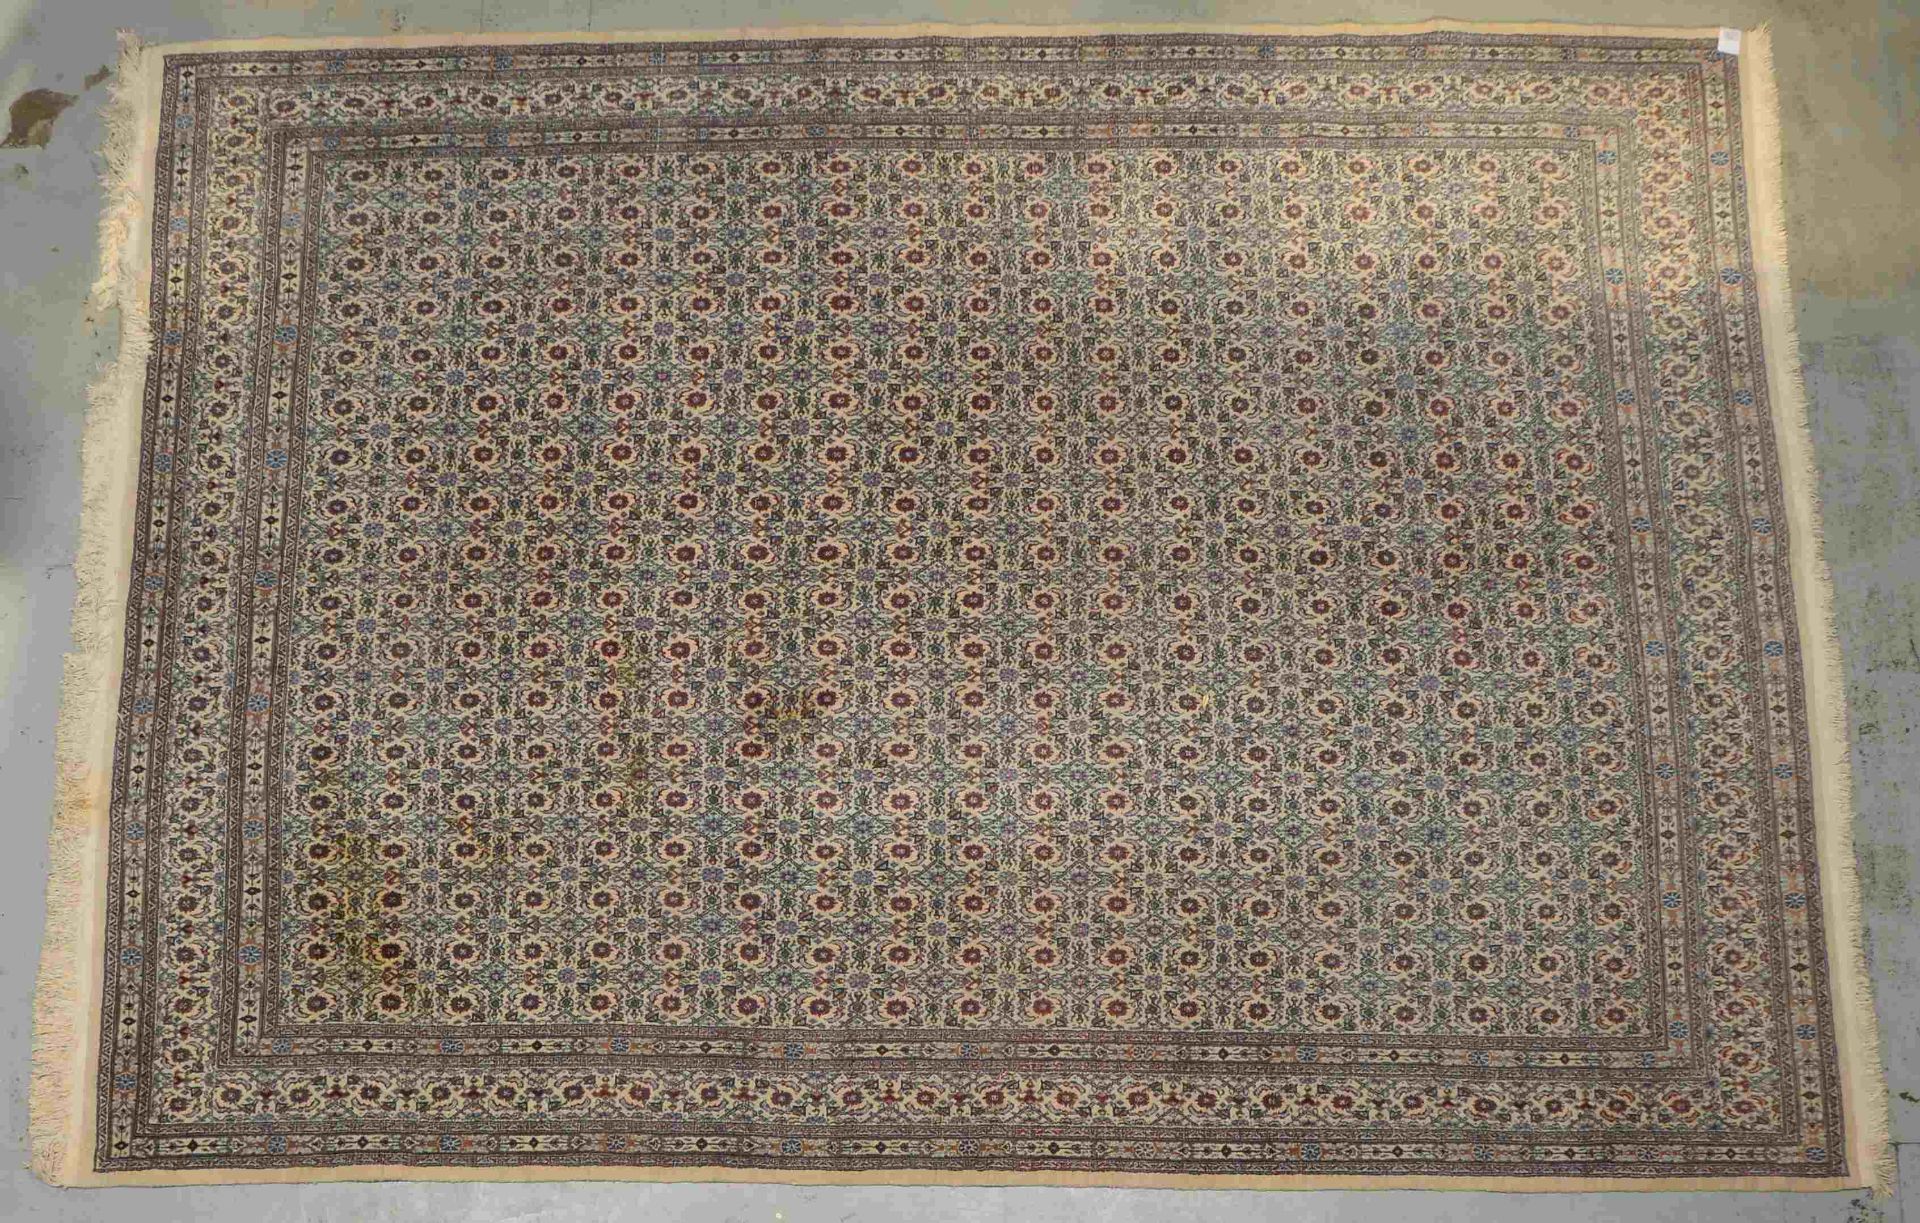 Orientteppich, mittelfeine Knuepfung, hellgrundig, gemustert, Flor in gutem Zustand, Masse 3,65 x 2, - Image 2 of 4